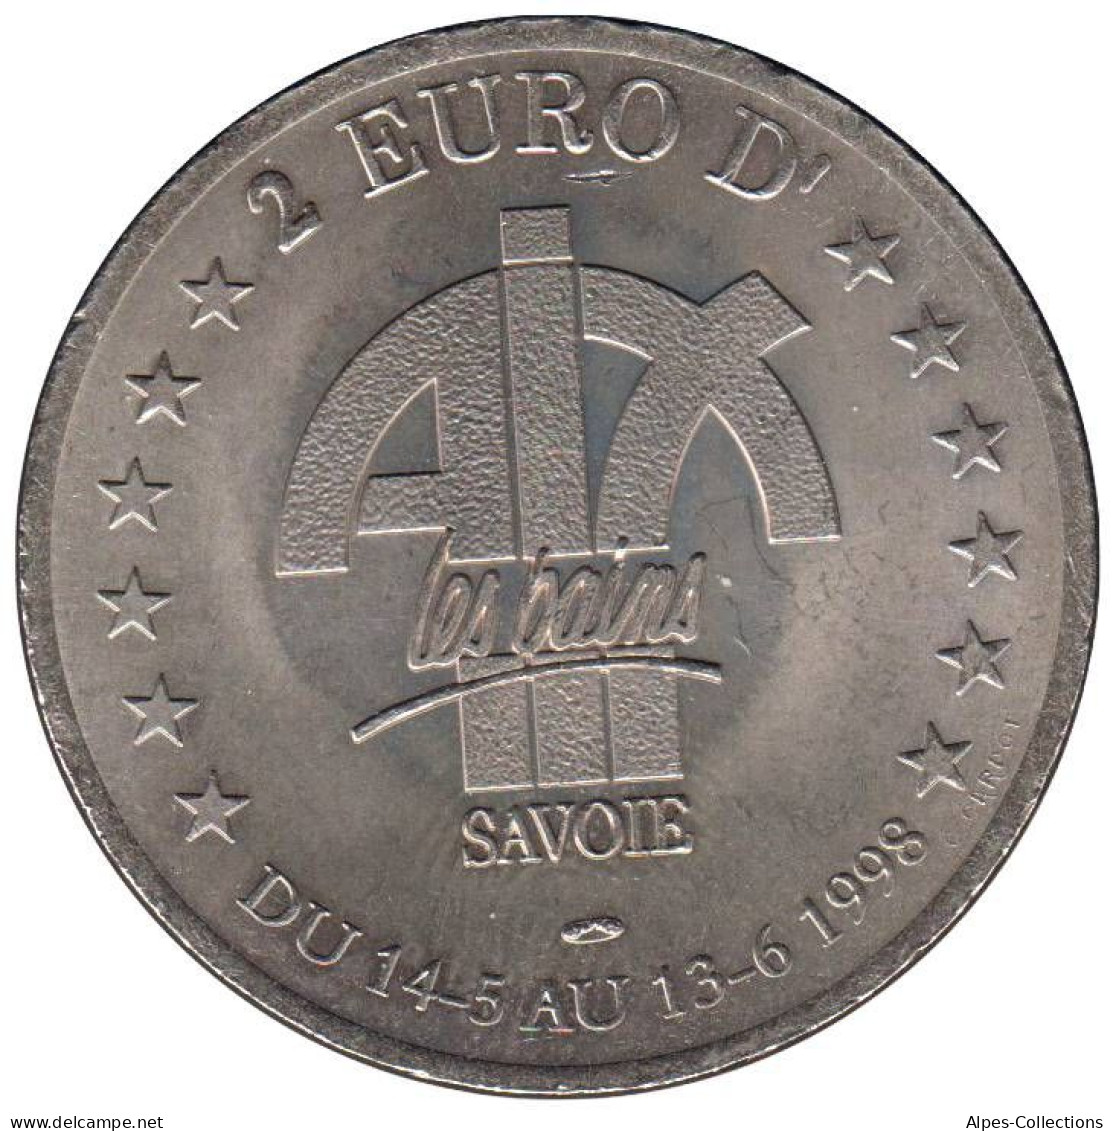 AIX LES BAINS - EU0020.3 - 2 EURO DES VILLES - Réf: T419 - 1998 - Euro Delle Città